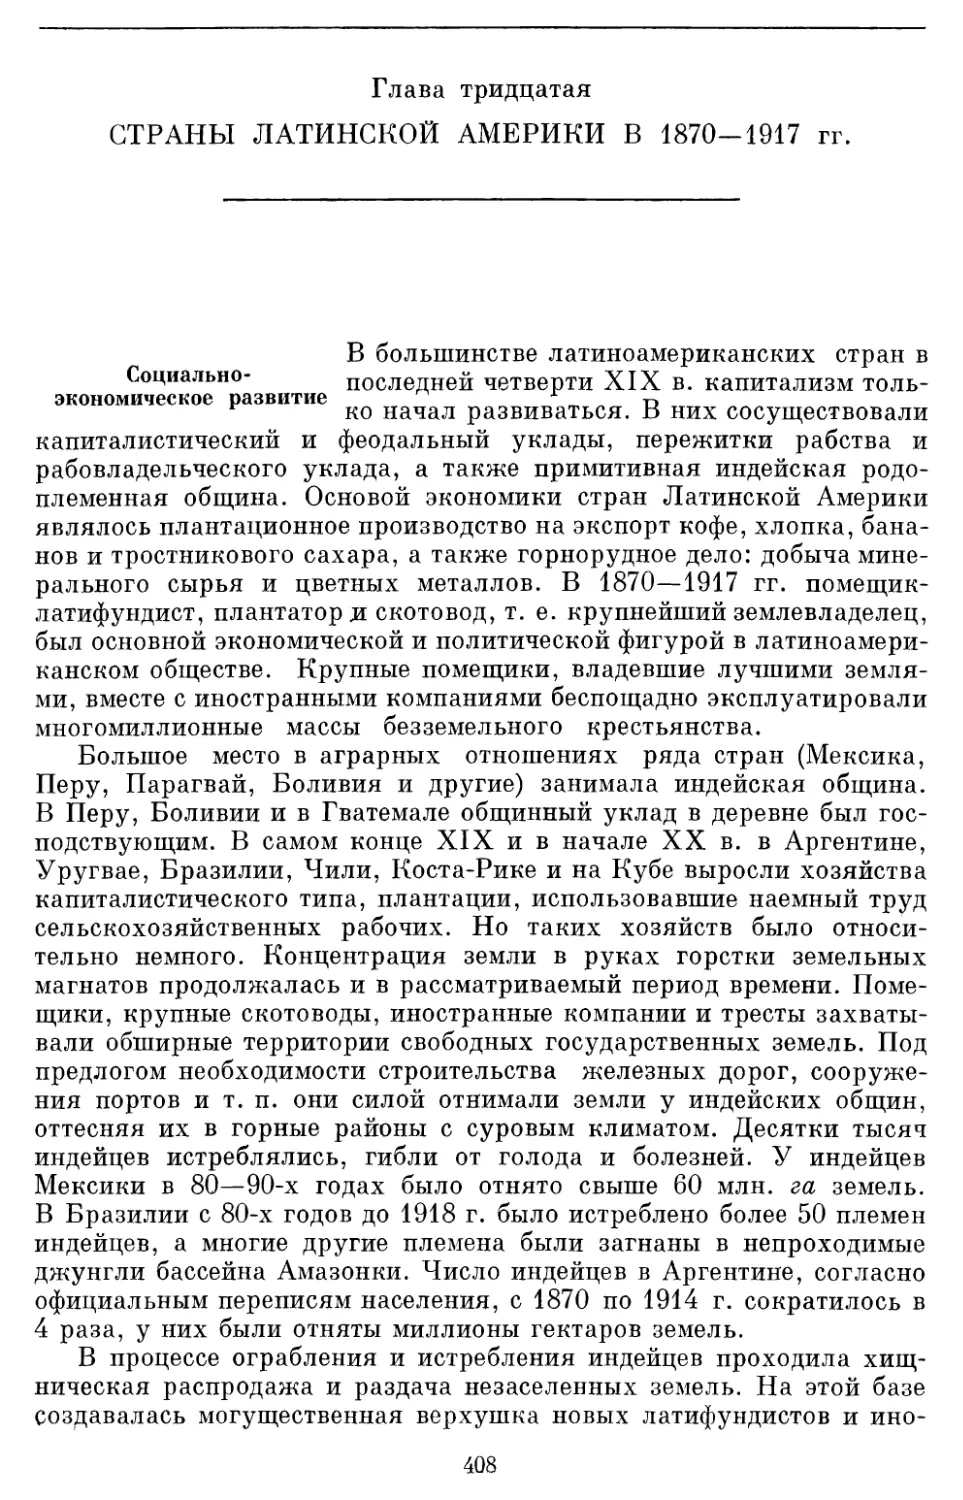 Глава тридцатая СТРАНЫ ЛАТИНСКОЙ АМЕРИКИ В 1870-1917 гг